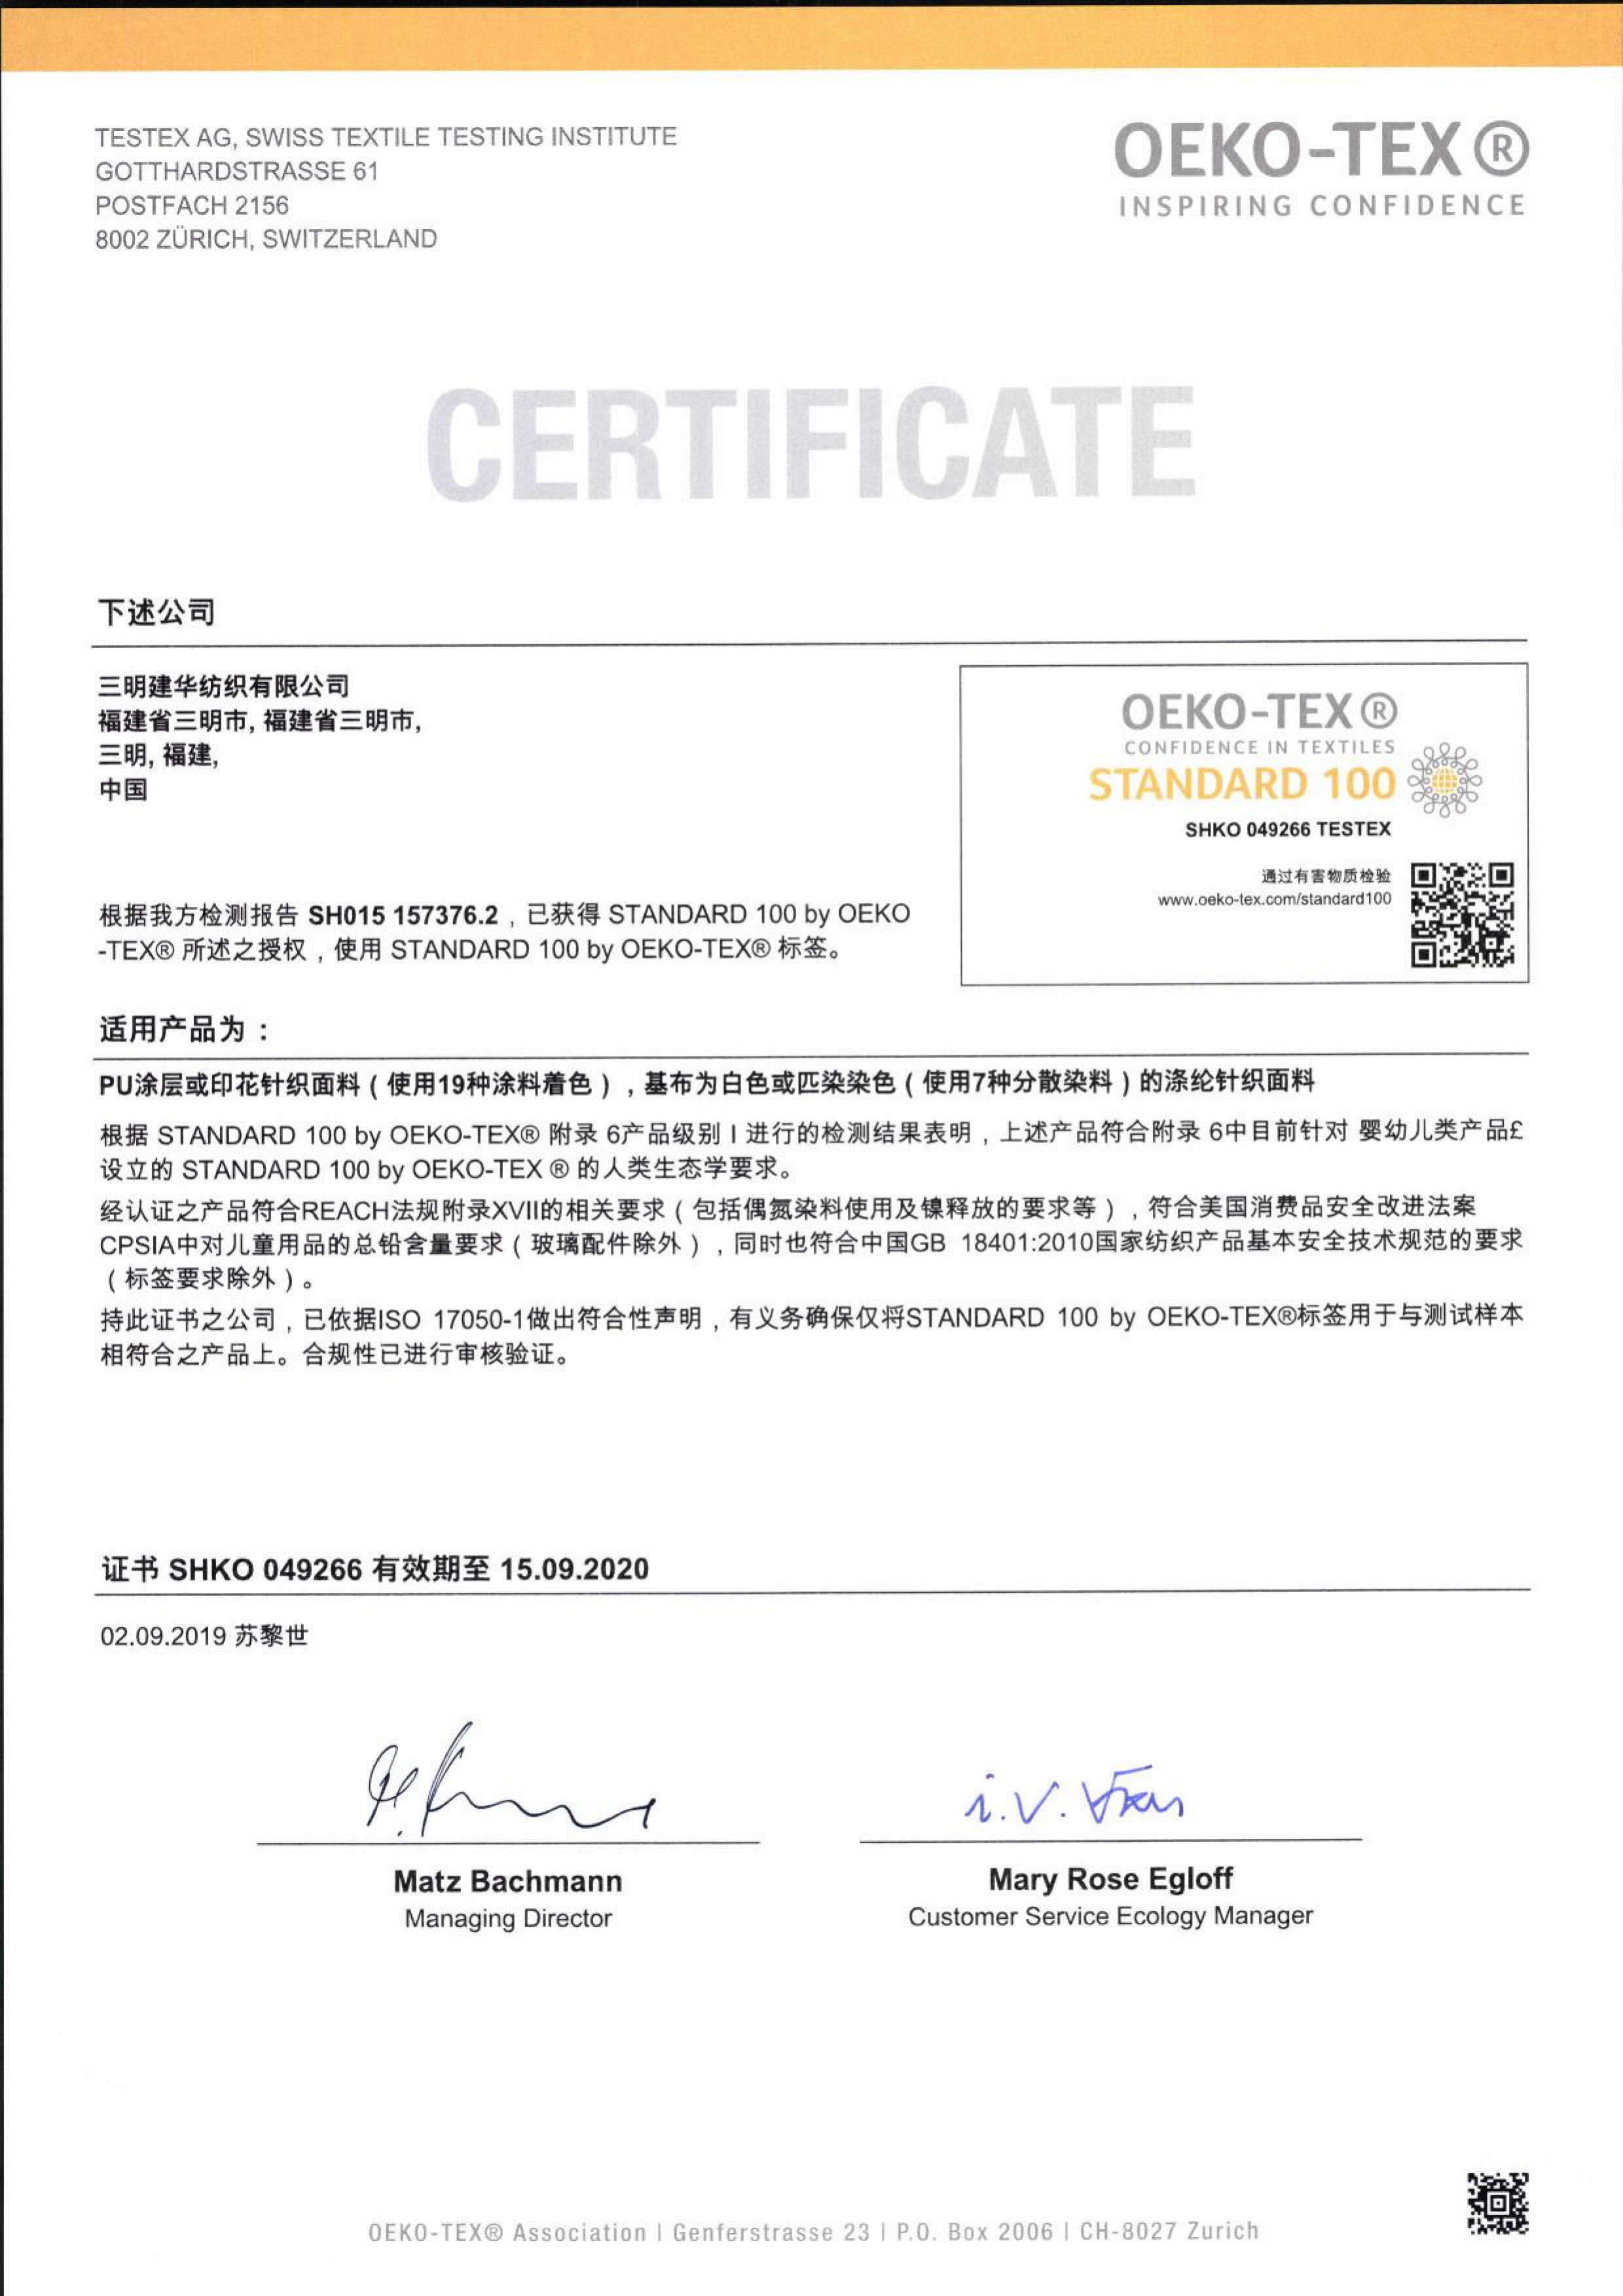 PU fabric certificate